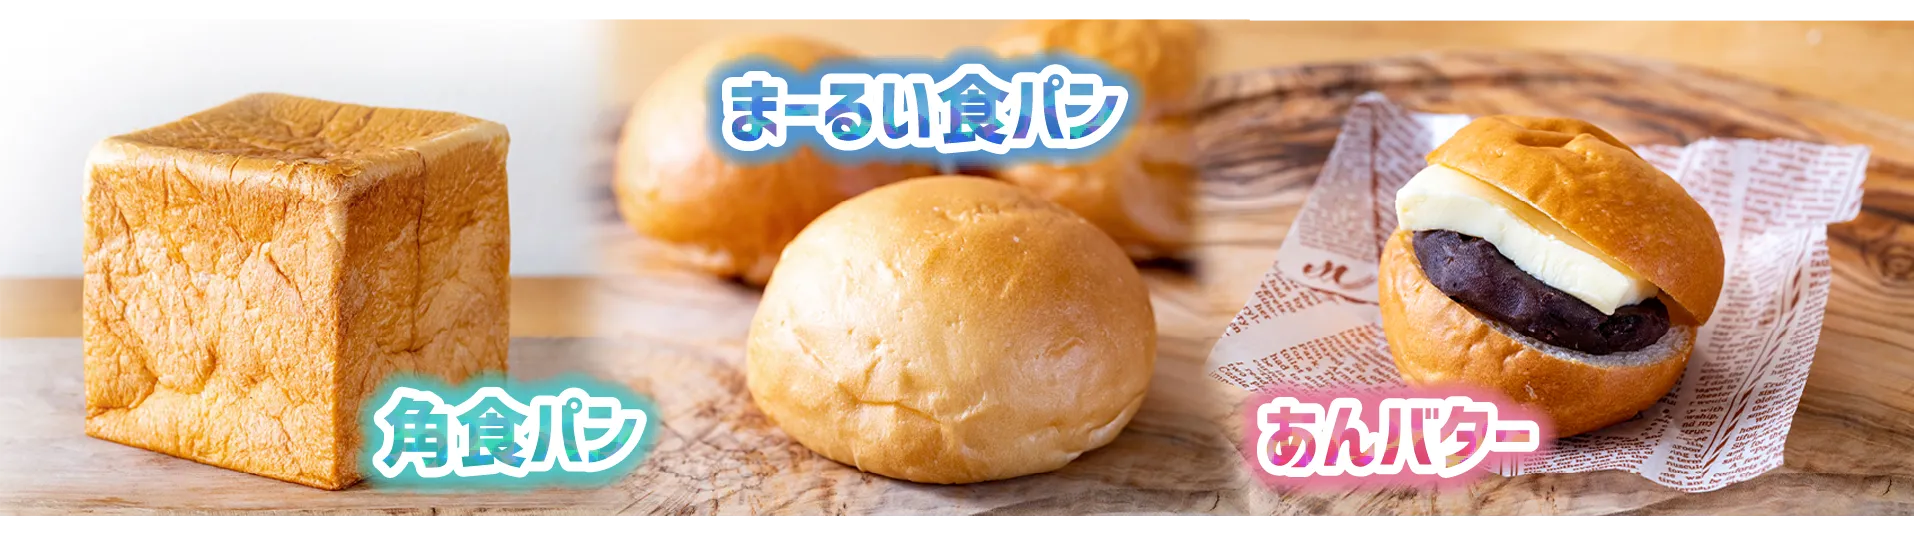 焼印できるパンの種類